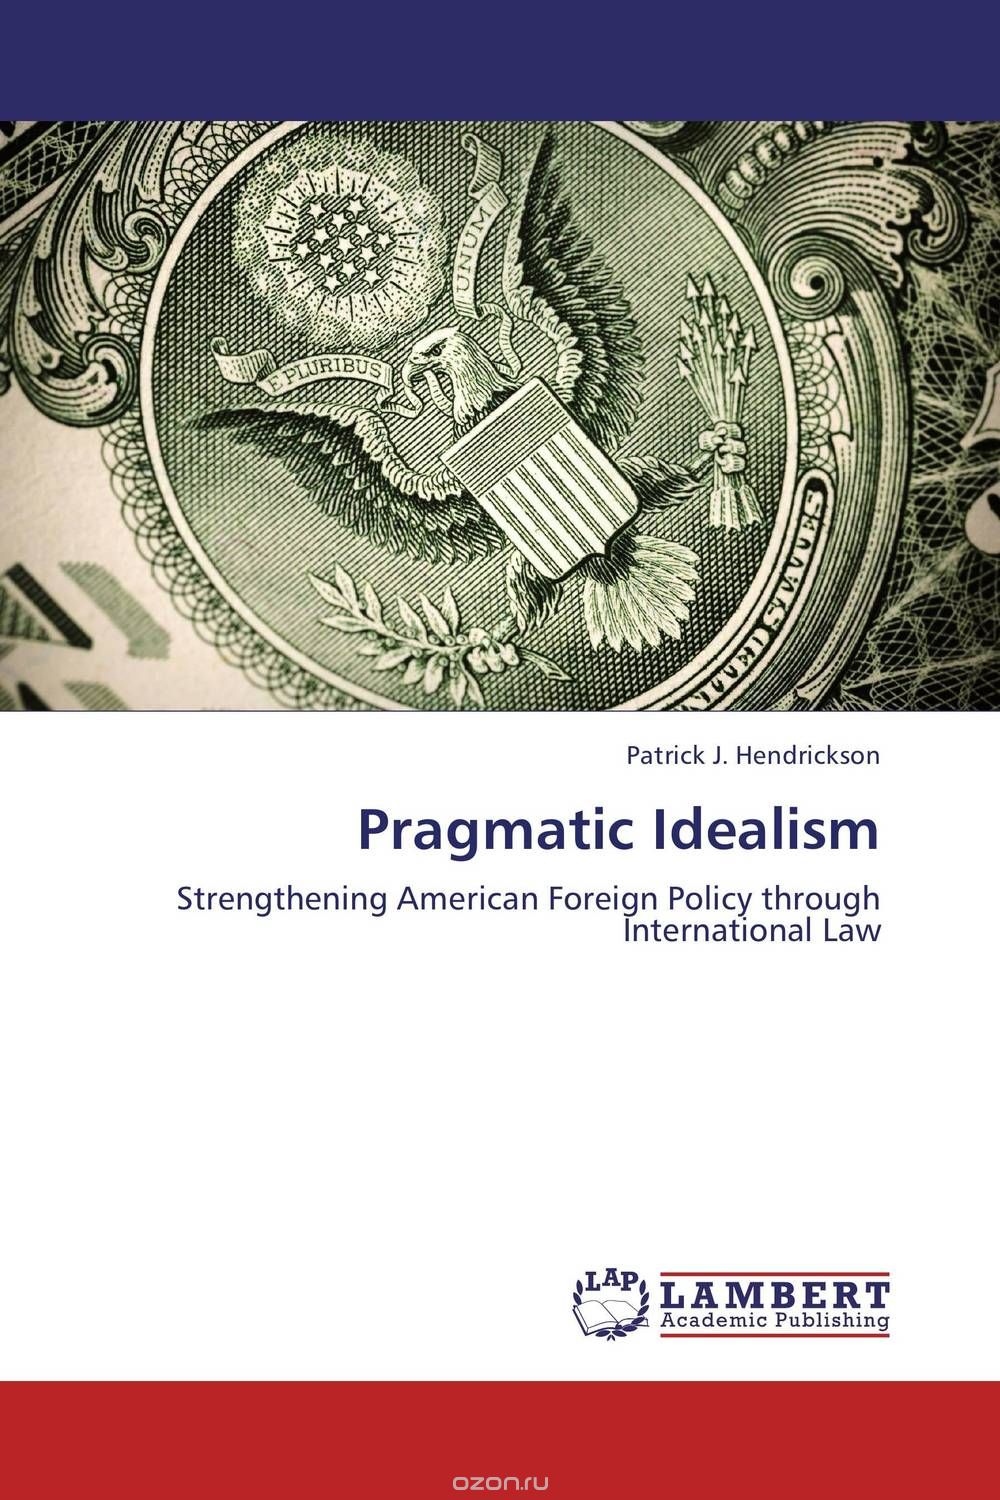 Скачать книгу "Pragmatic Idealism"